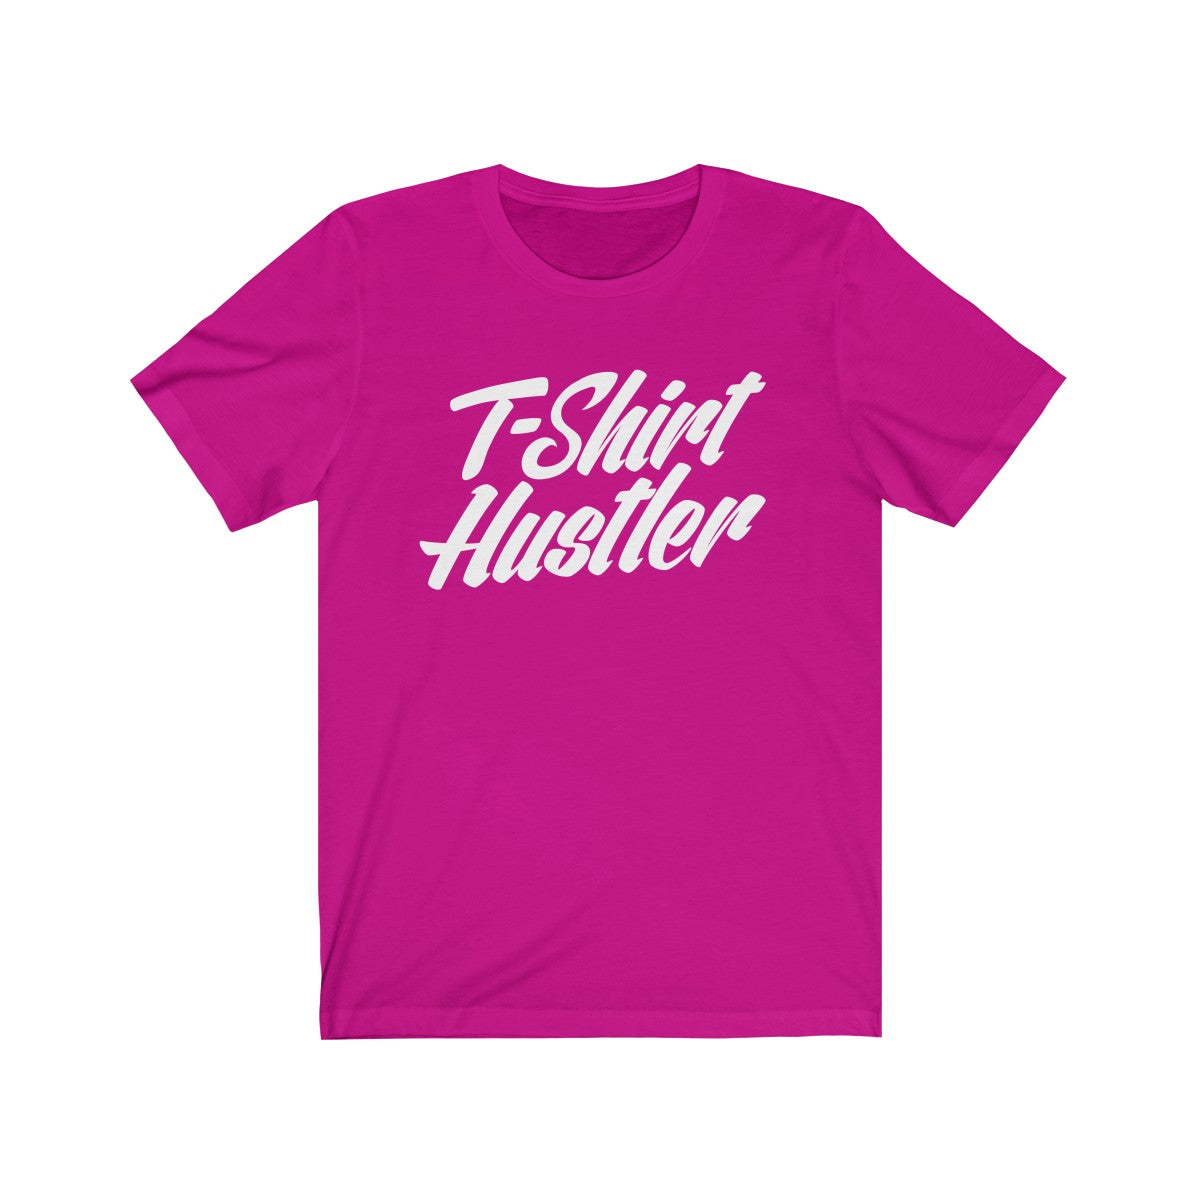 T-shirt Hustler Tee